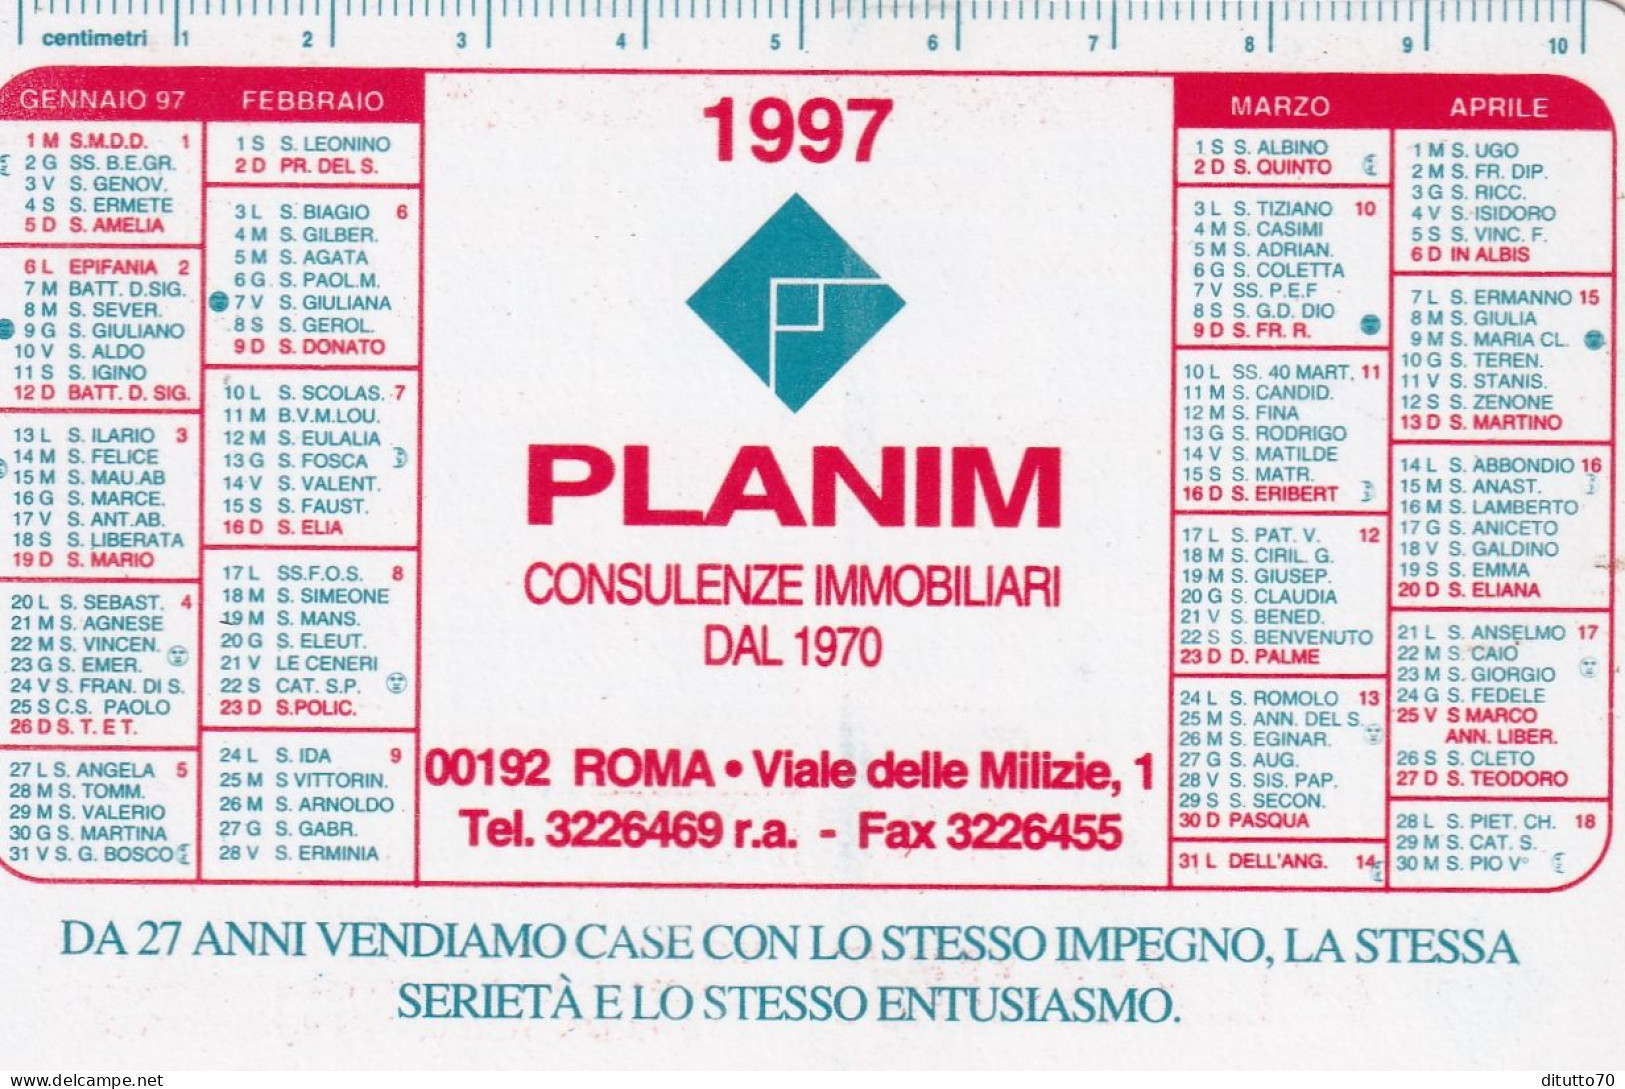 Calendarietto - Planim - Consulenza Immobiliari - Roma - Anno 1997 - Small : 1991-00